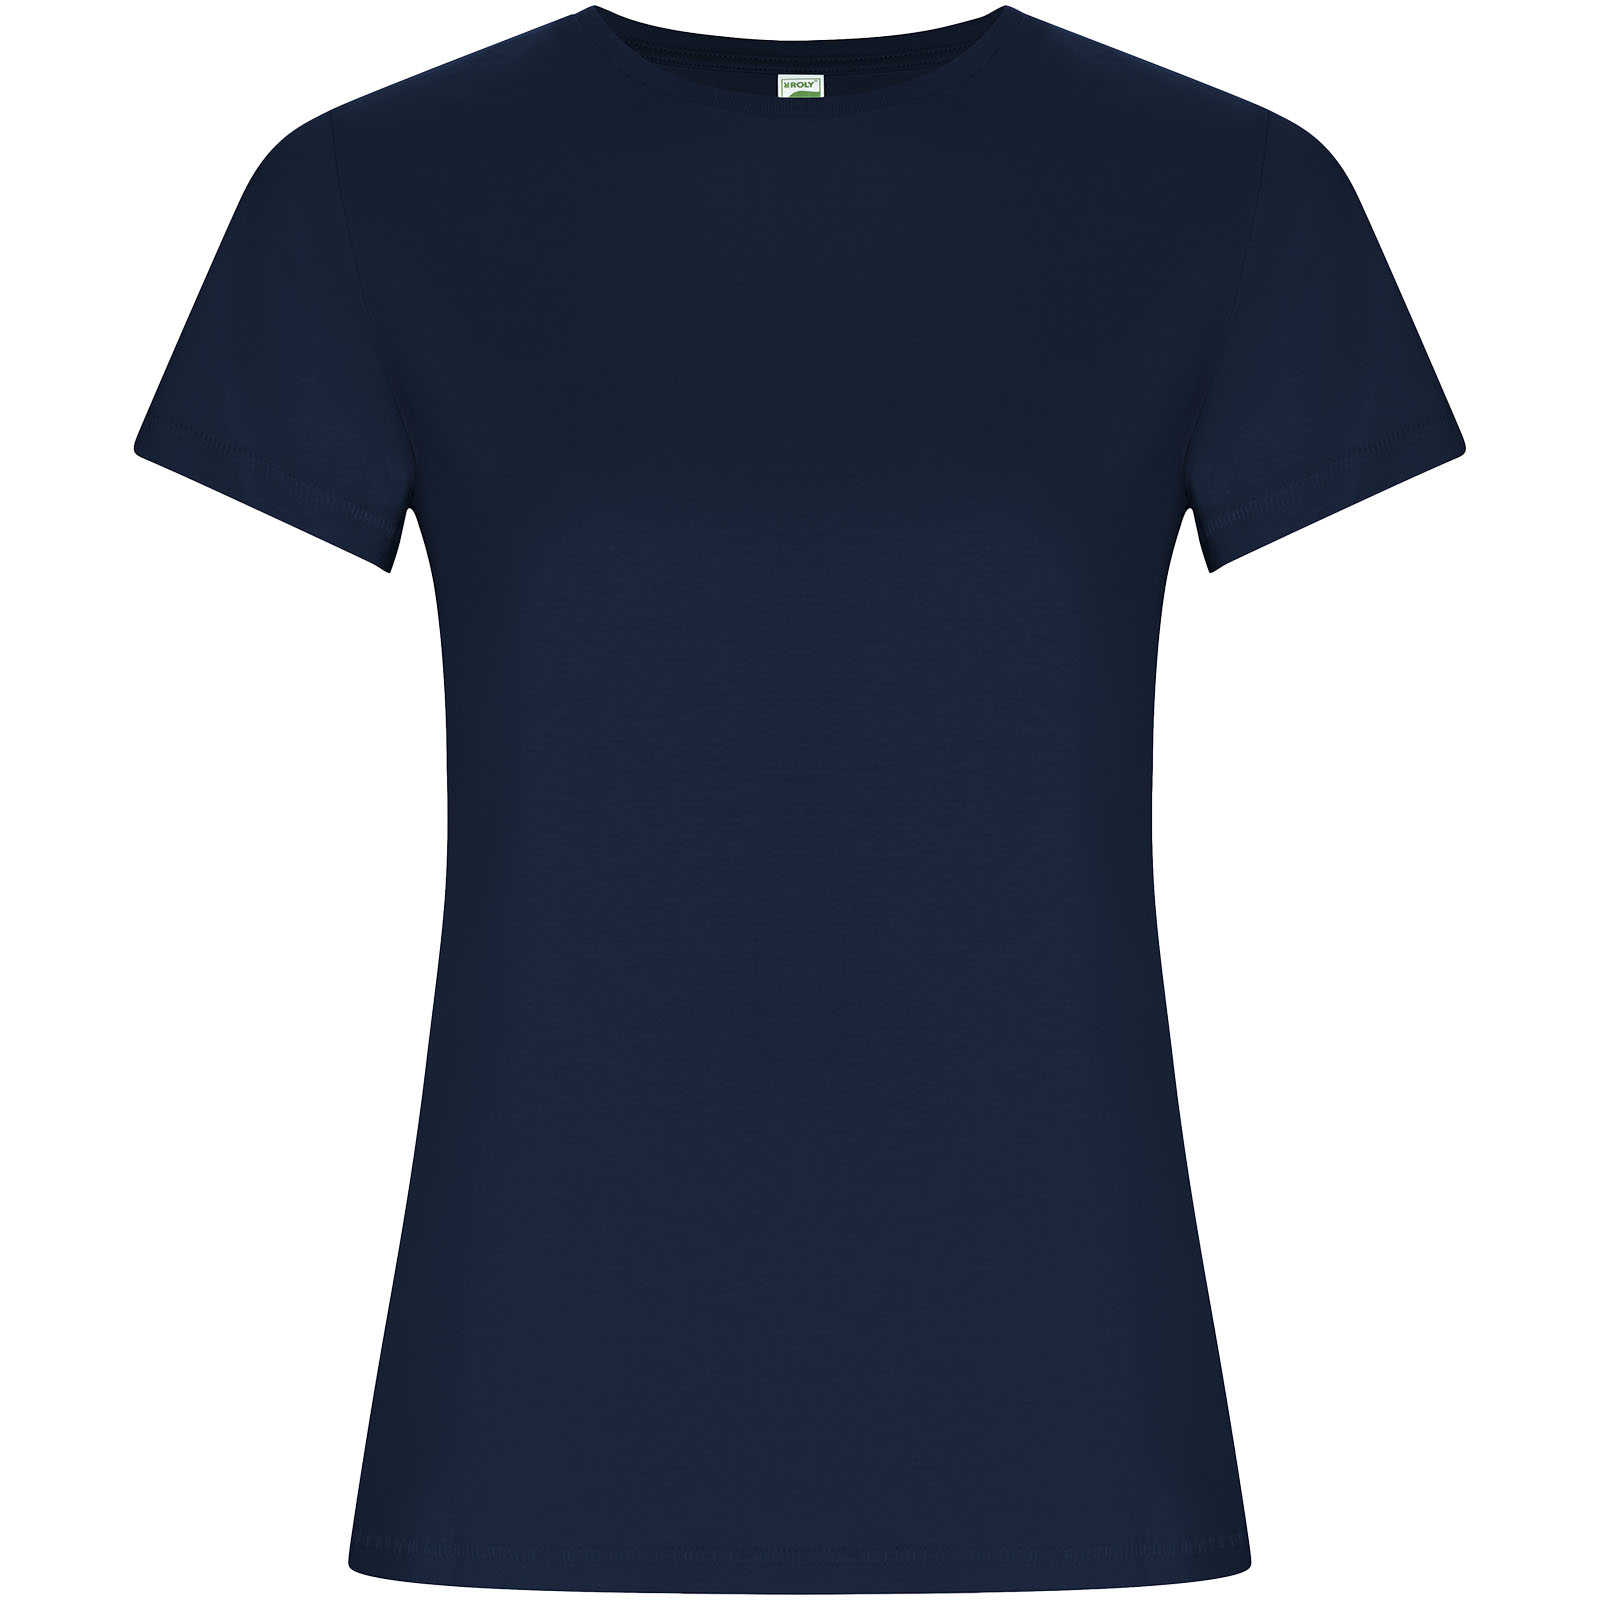 Advertising T-shirts - Golden short sleeve women's t-shirt